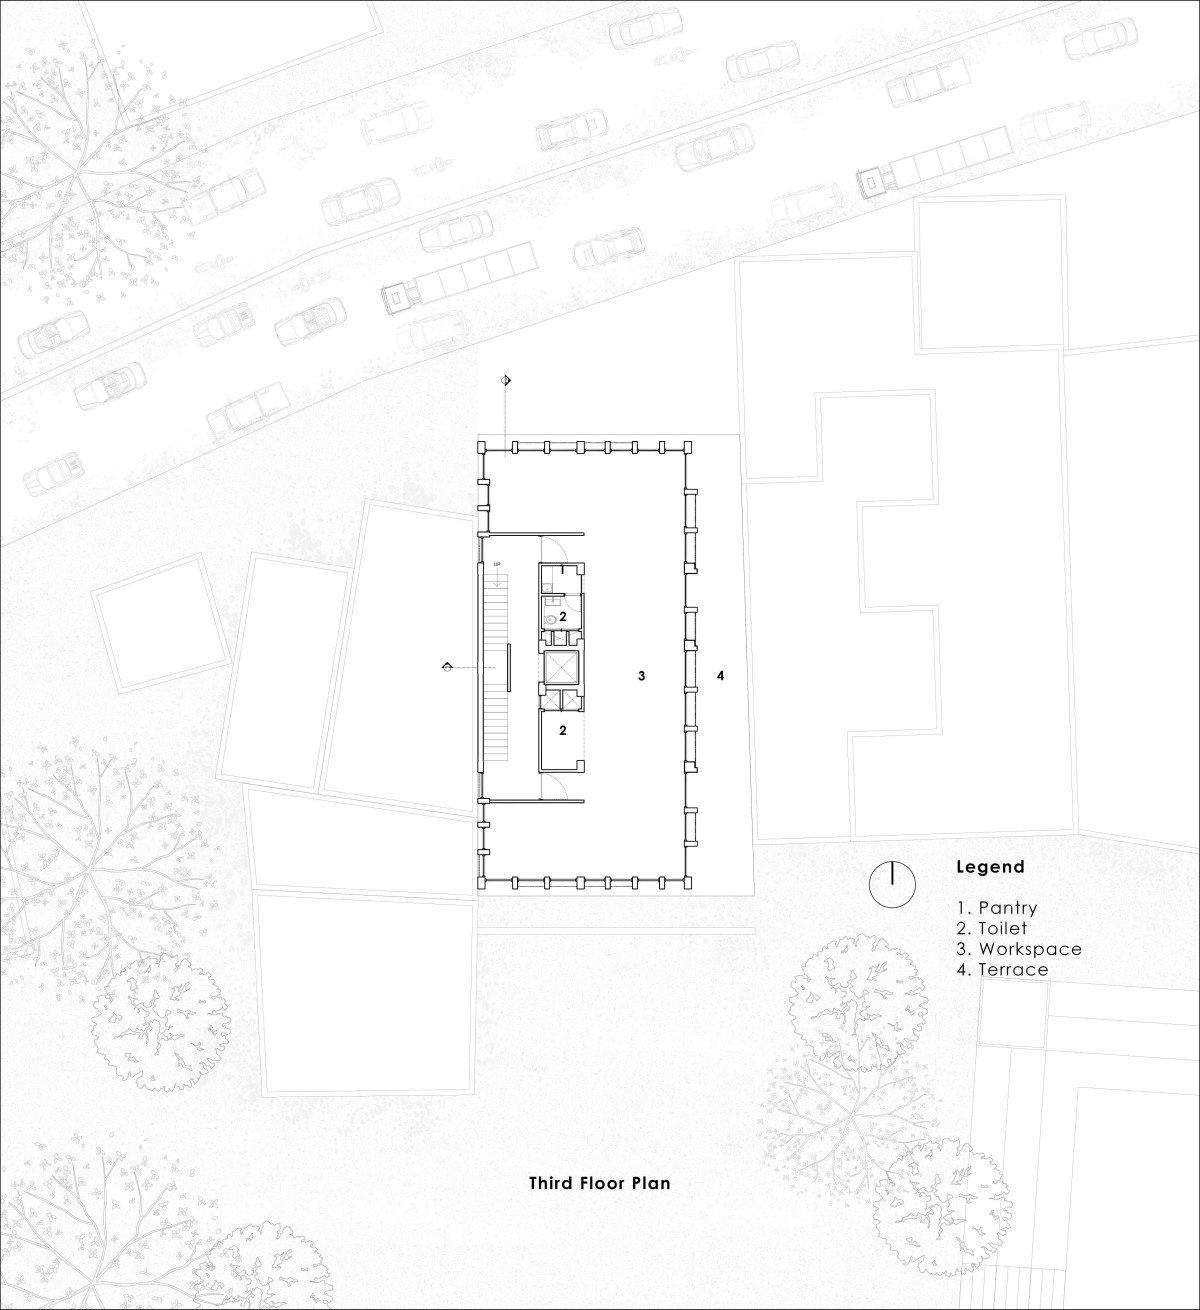 Third floor plan of Veiled Building by KUN Studio